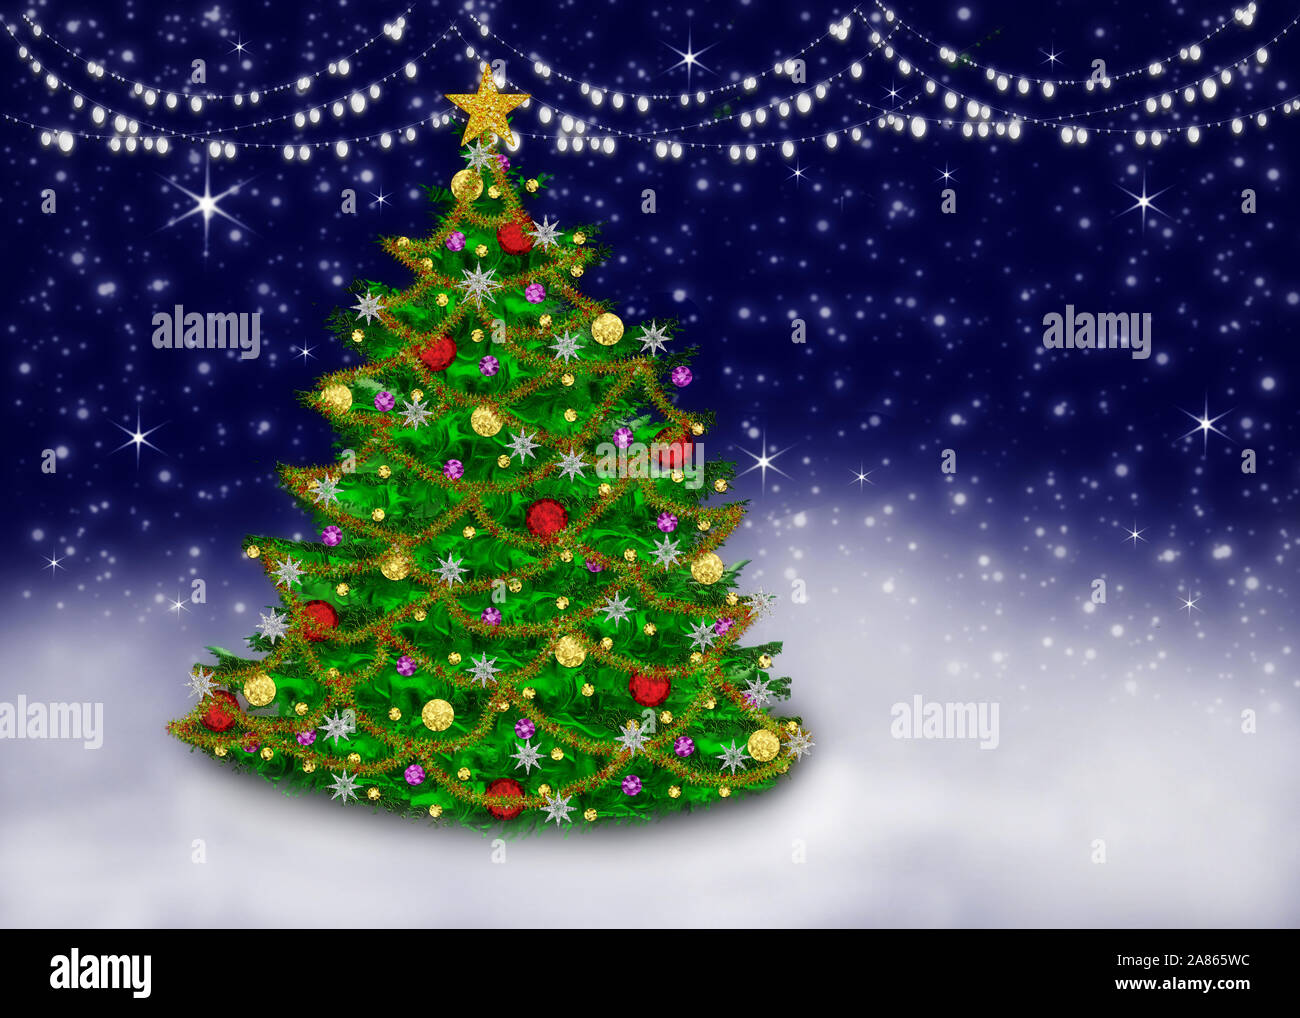 Graphique magnifique et éclairé de l'arbre de Noël décoré dans une scène de nuit de rêve avec les plafonniers. Banque D'Images